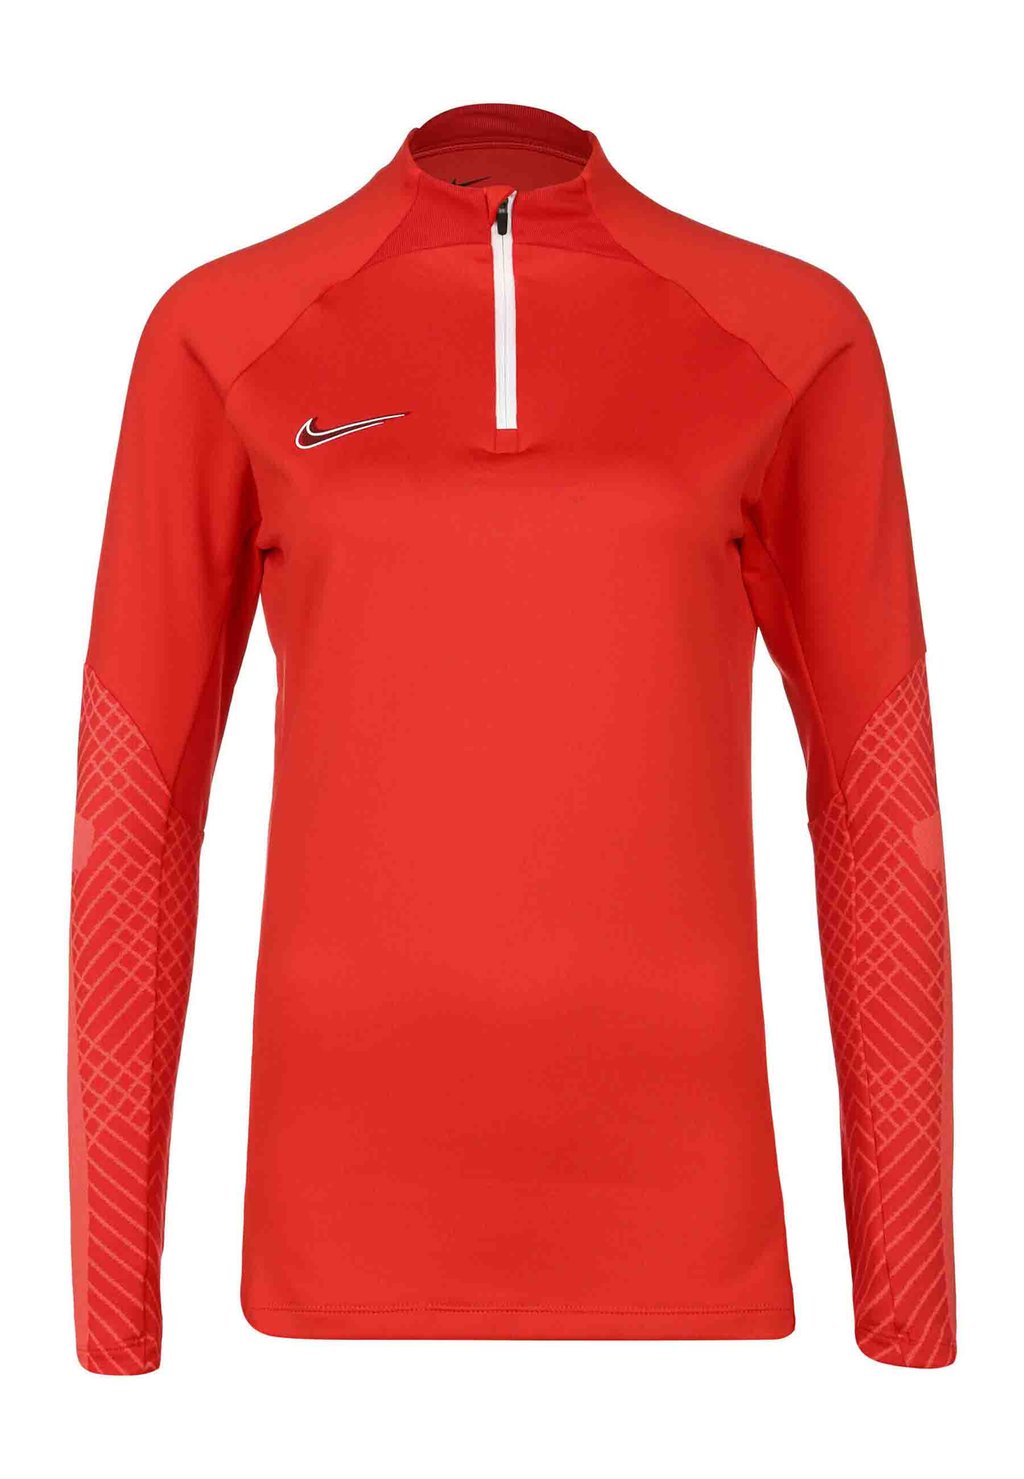 Толстовка Nike fitsch red white